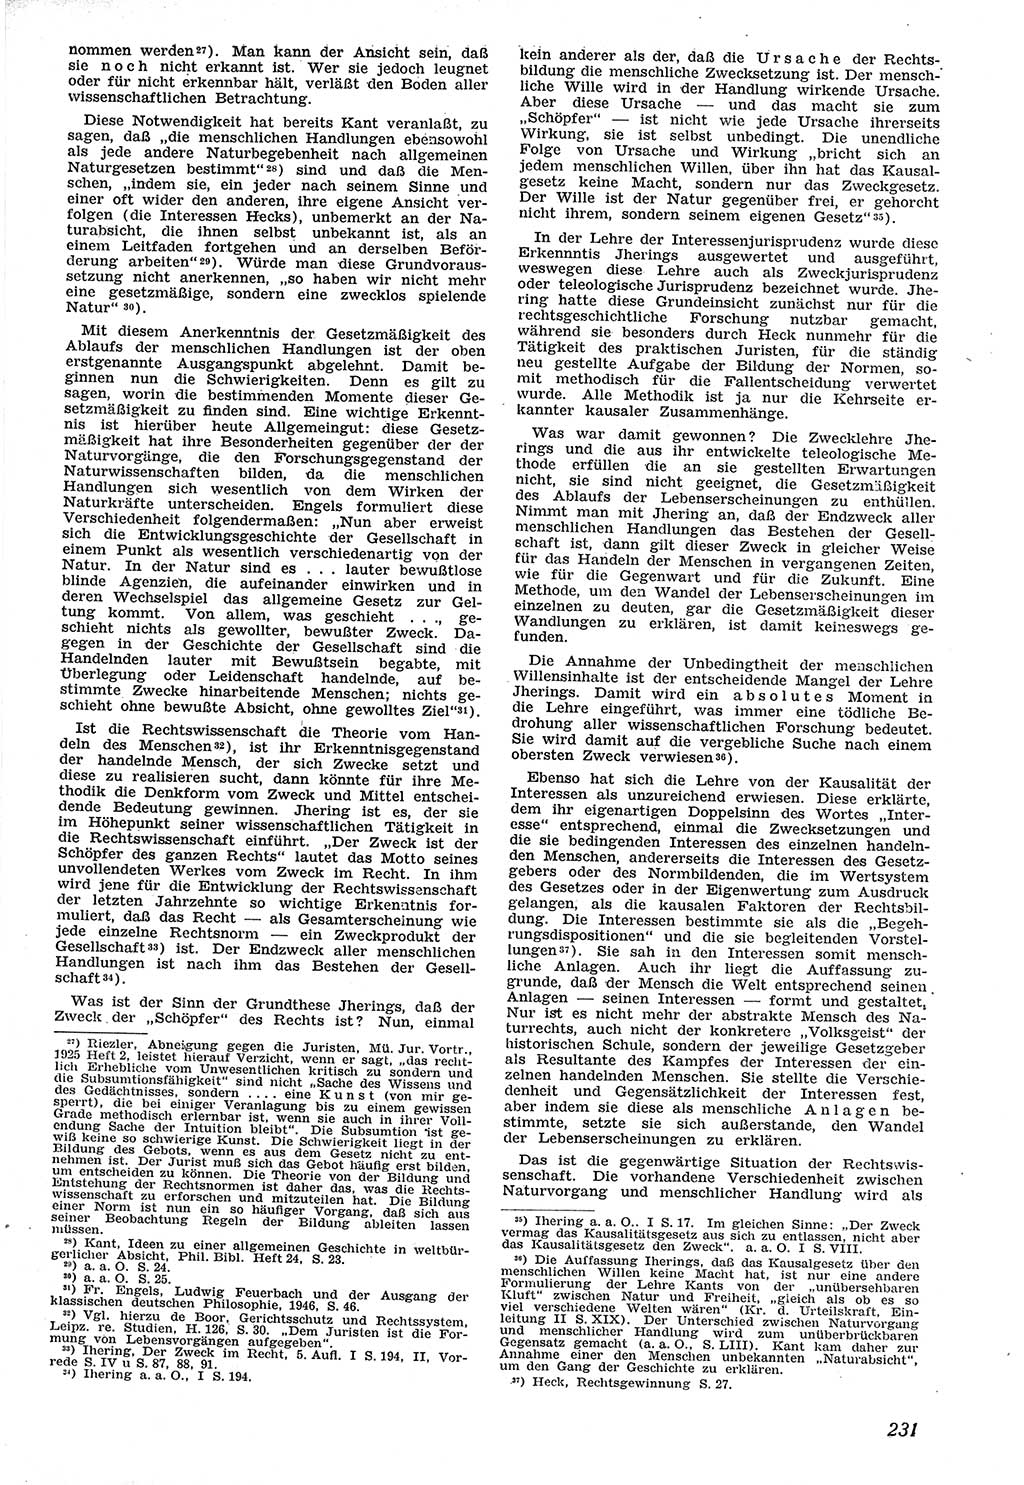 Neue Justiz (NJ), Zeitschrift für Recht und Rechtswissenschaft [Sowjetische Besatzungszone (SBZ) Deutschland], 1. Jahrgang 1947, Seite 231 (NJ SBZ Dtl. 1947, S. 231)